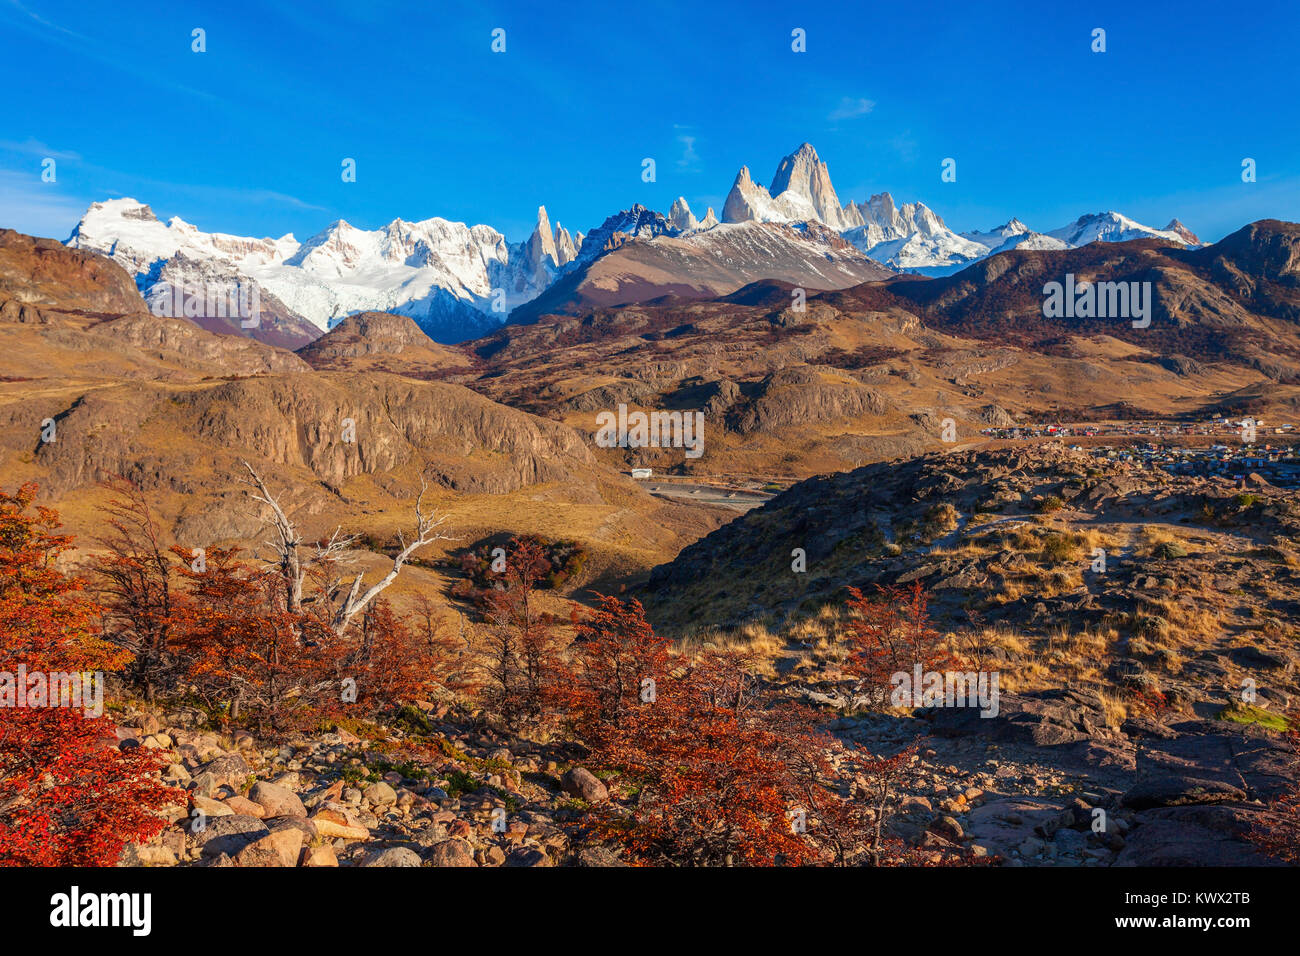 Le mont Fitz Roy (également connu sous le nom de Cerro Chaltén) vue aérienne. Fitz Roy est une montagne située près de El Chaltén, dans le sud de la Patagonie, à la frontière bet Banque D'Images